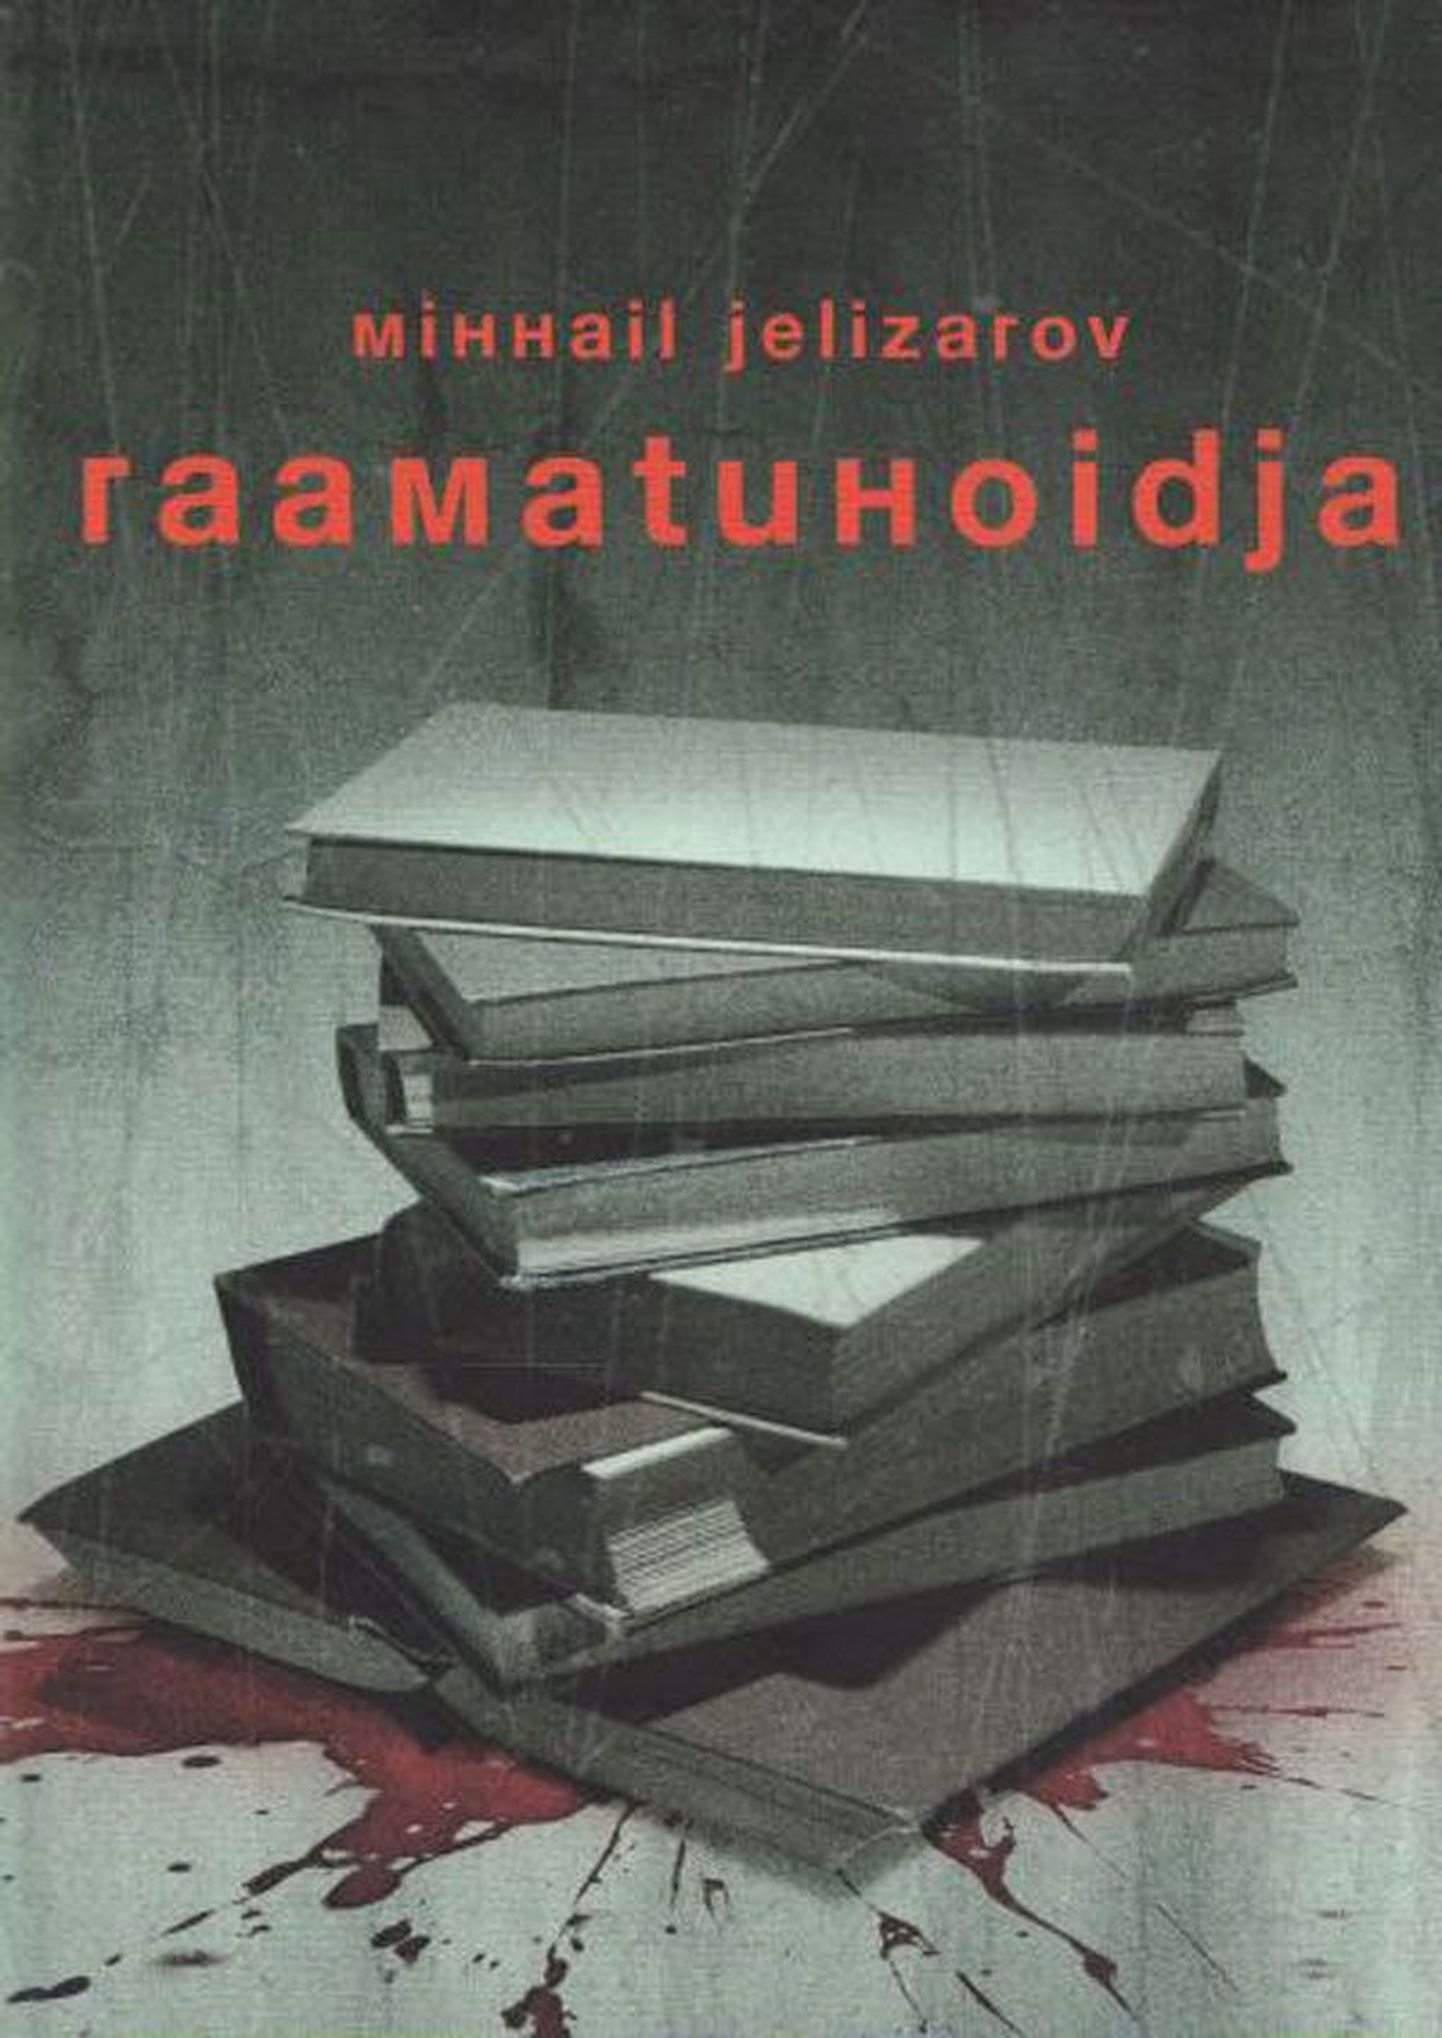 Raamat 
Mihhail Jelizarov
«Raamatuhoidja»
Tõlkinud Veronika Einberg
Varrak
360 lk